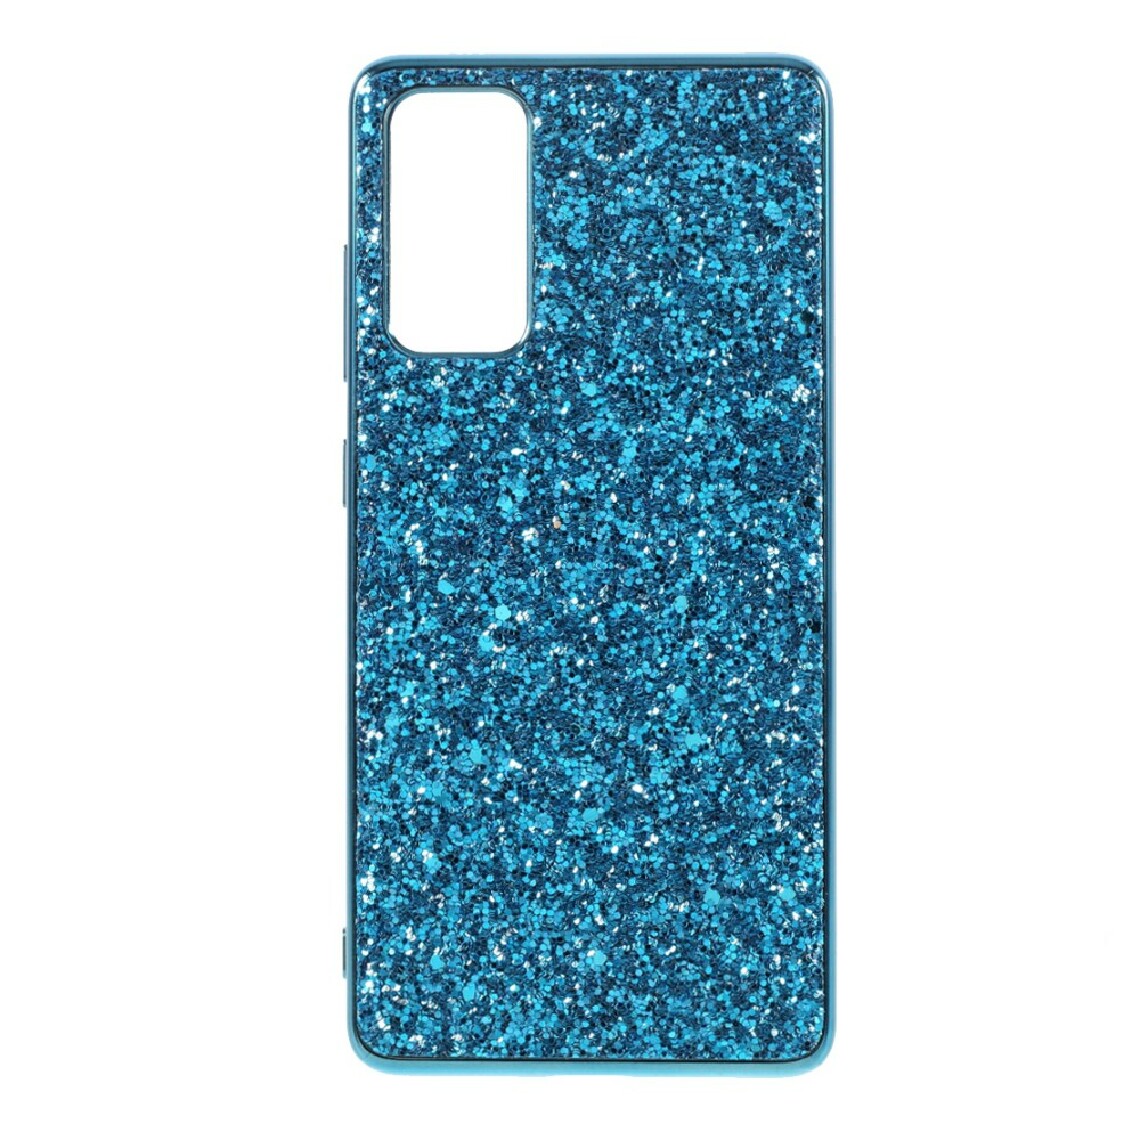 Other - Coque en TPU cadre de conception de paillettes scintillantes hybride bleu pour votre Samsung Galaxy S20 FE/S20 FE 5G - Coque, étui smartphone